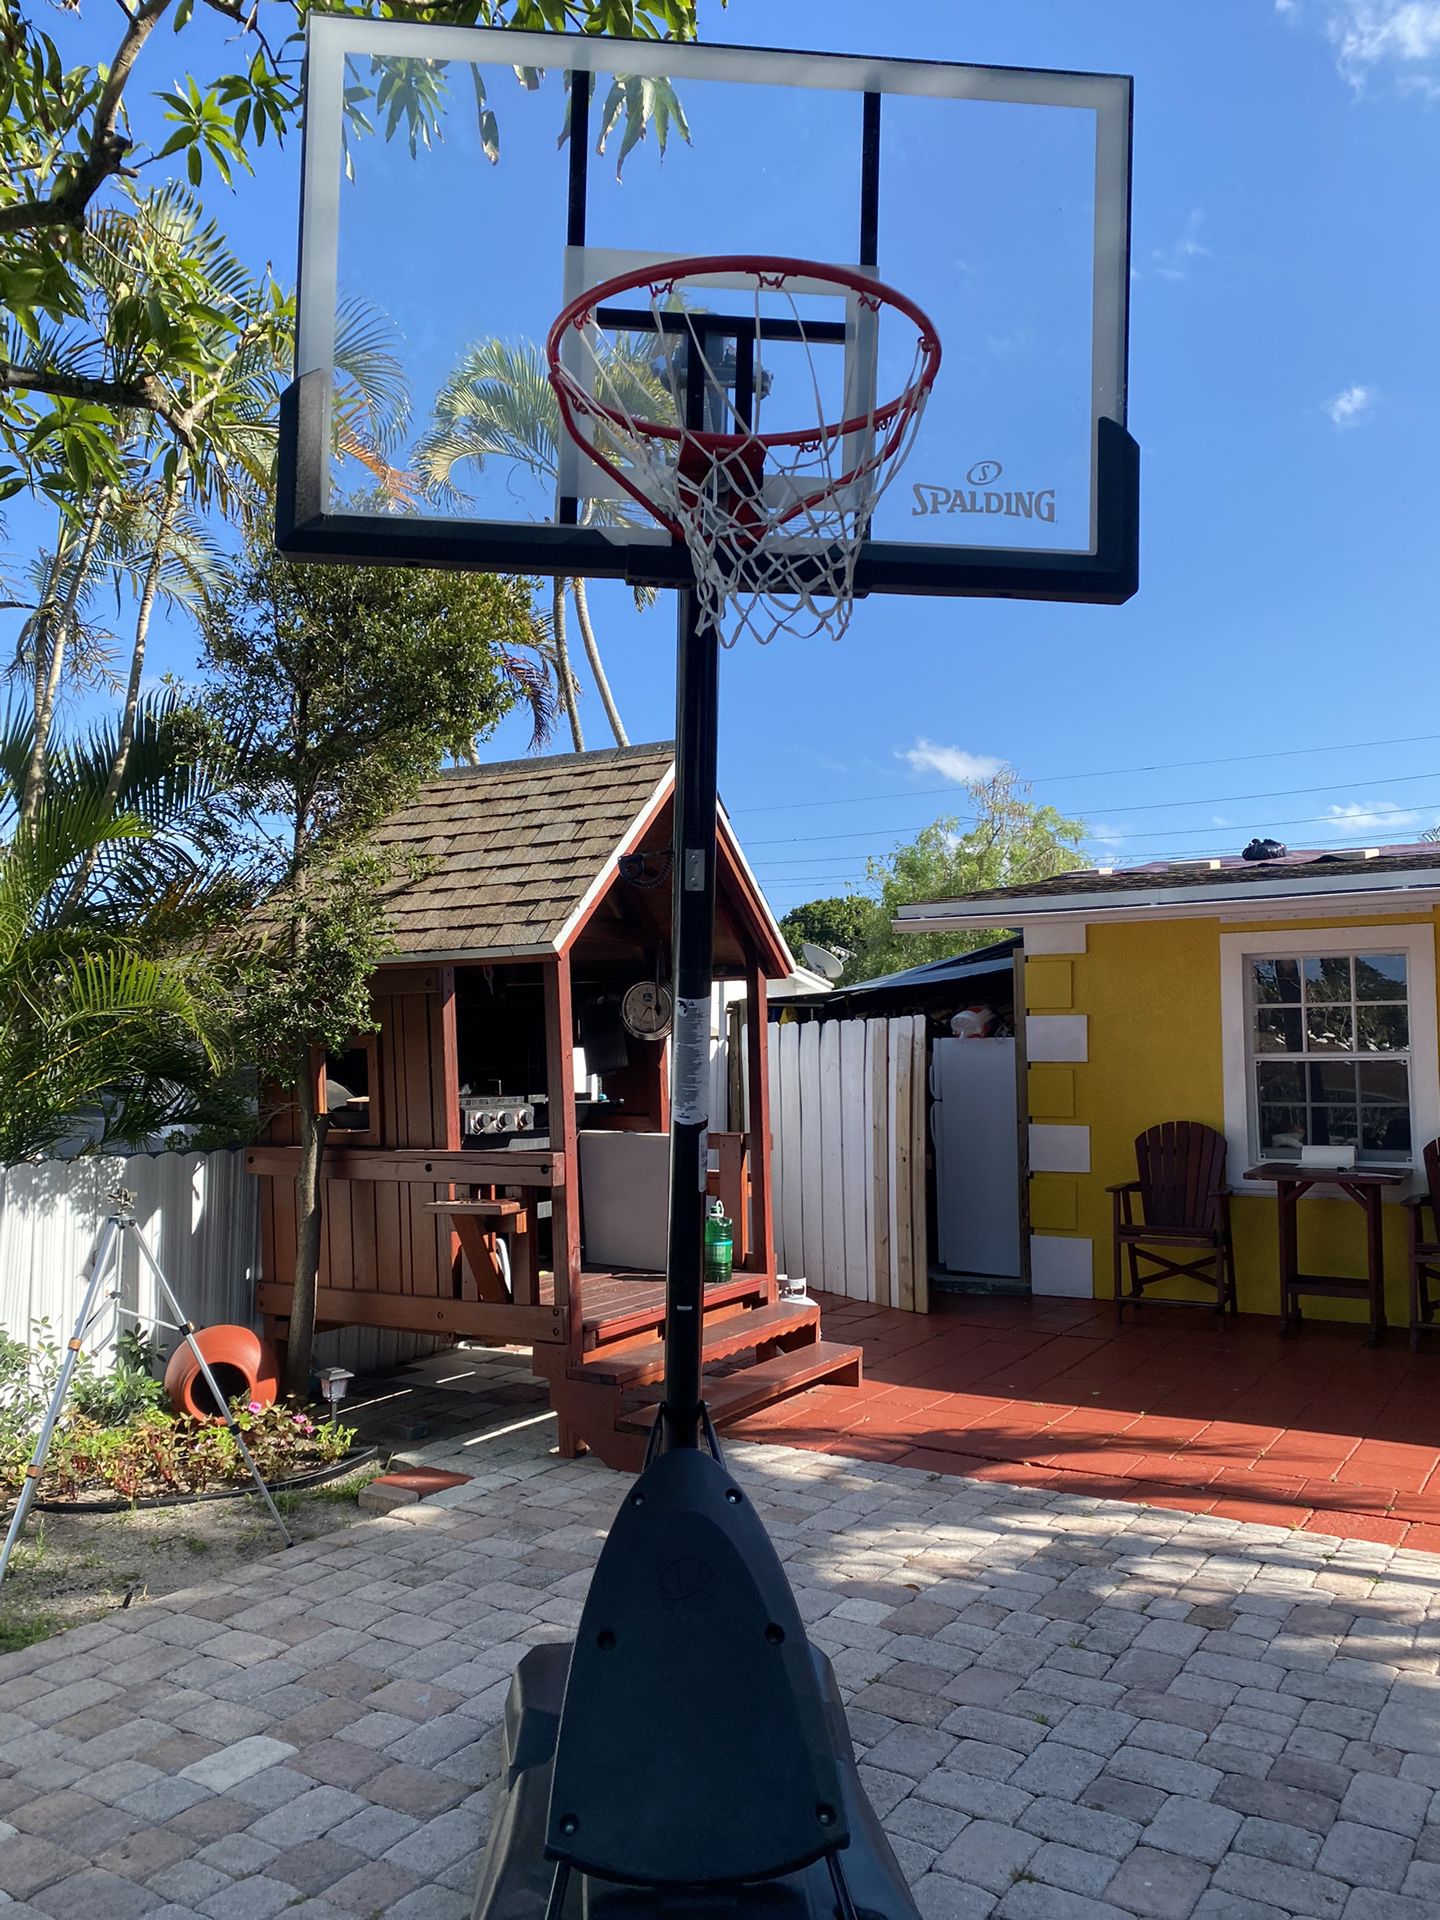 spalding basketball hoop 